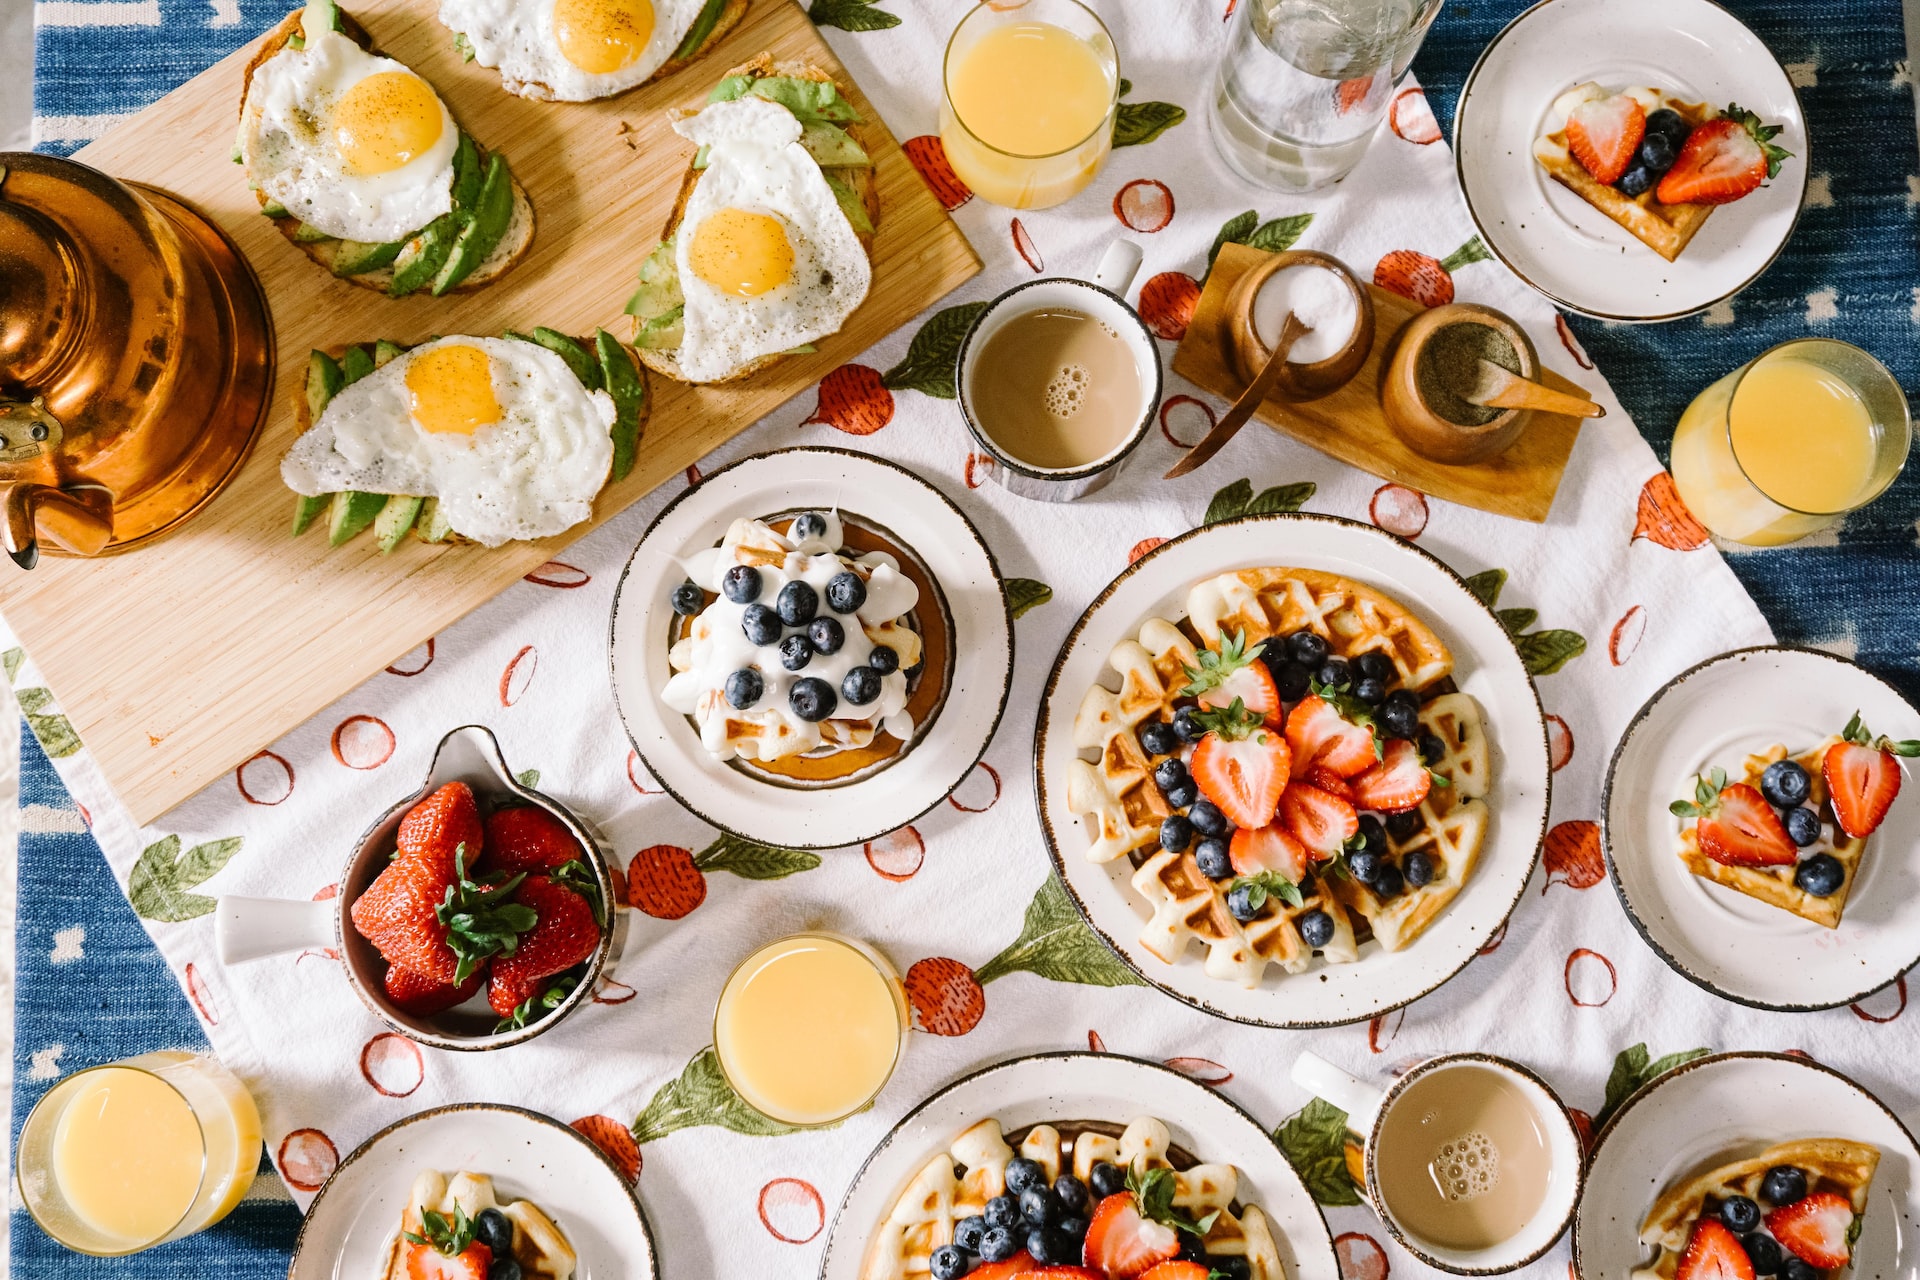 3 mythes sur le petit-déjeuner que vous devriez connaître